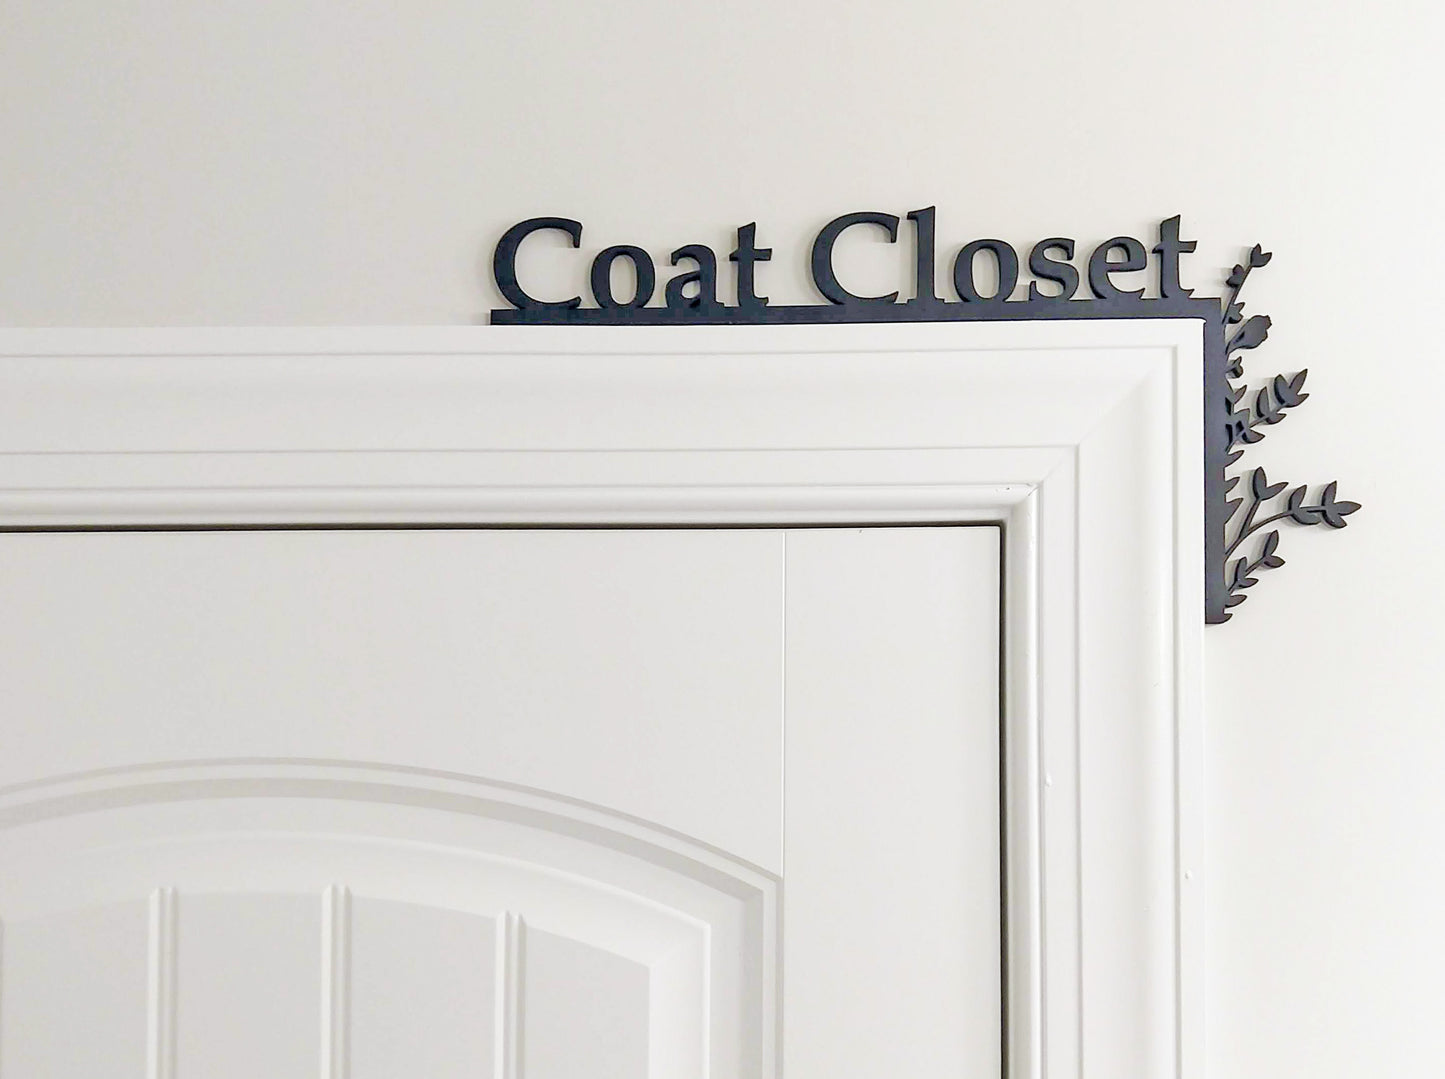 Coat Closet "Over the Door" Door Topper Sign